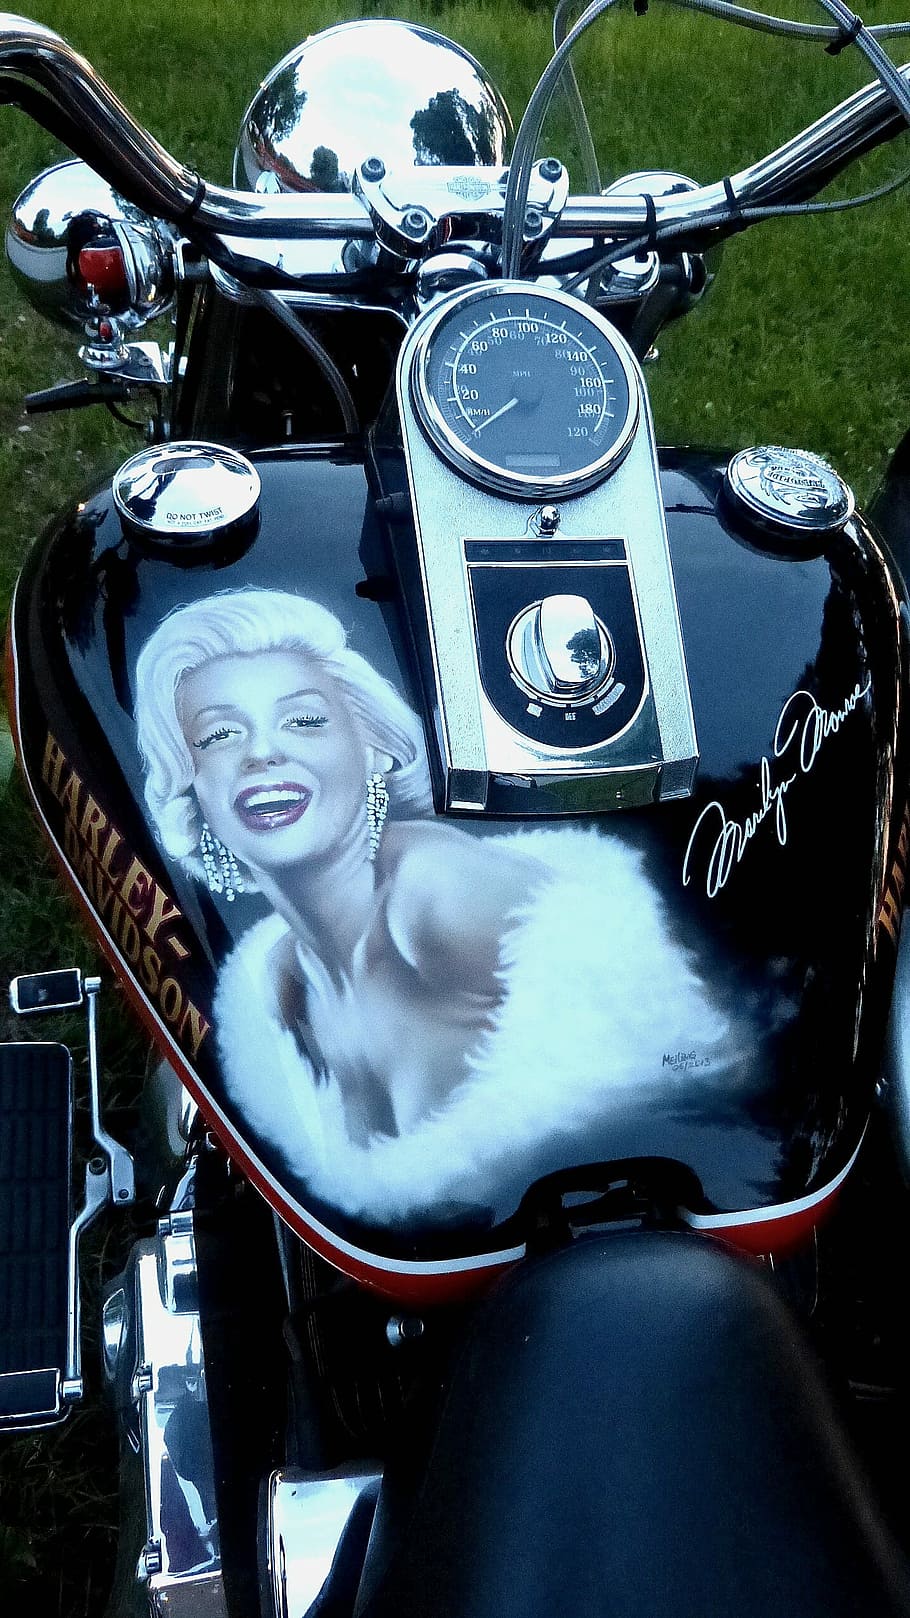 Harley Davidson, Marilyn Monroe, motocicleta, estilo retrô, antiquado, ao ar livre, dia, parte do corpo humano, modo de transporte, transporte